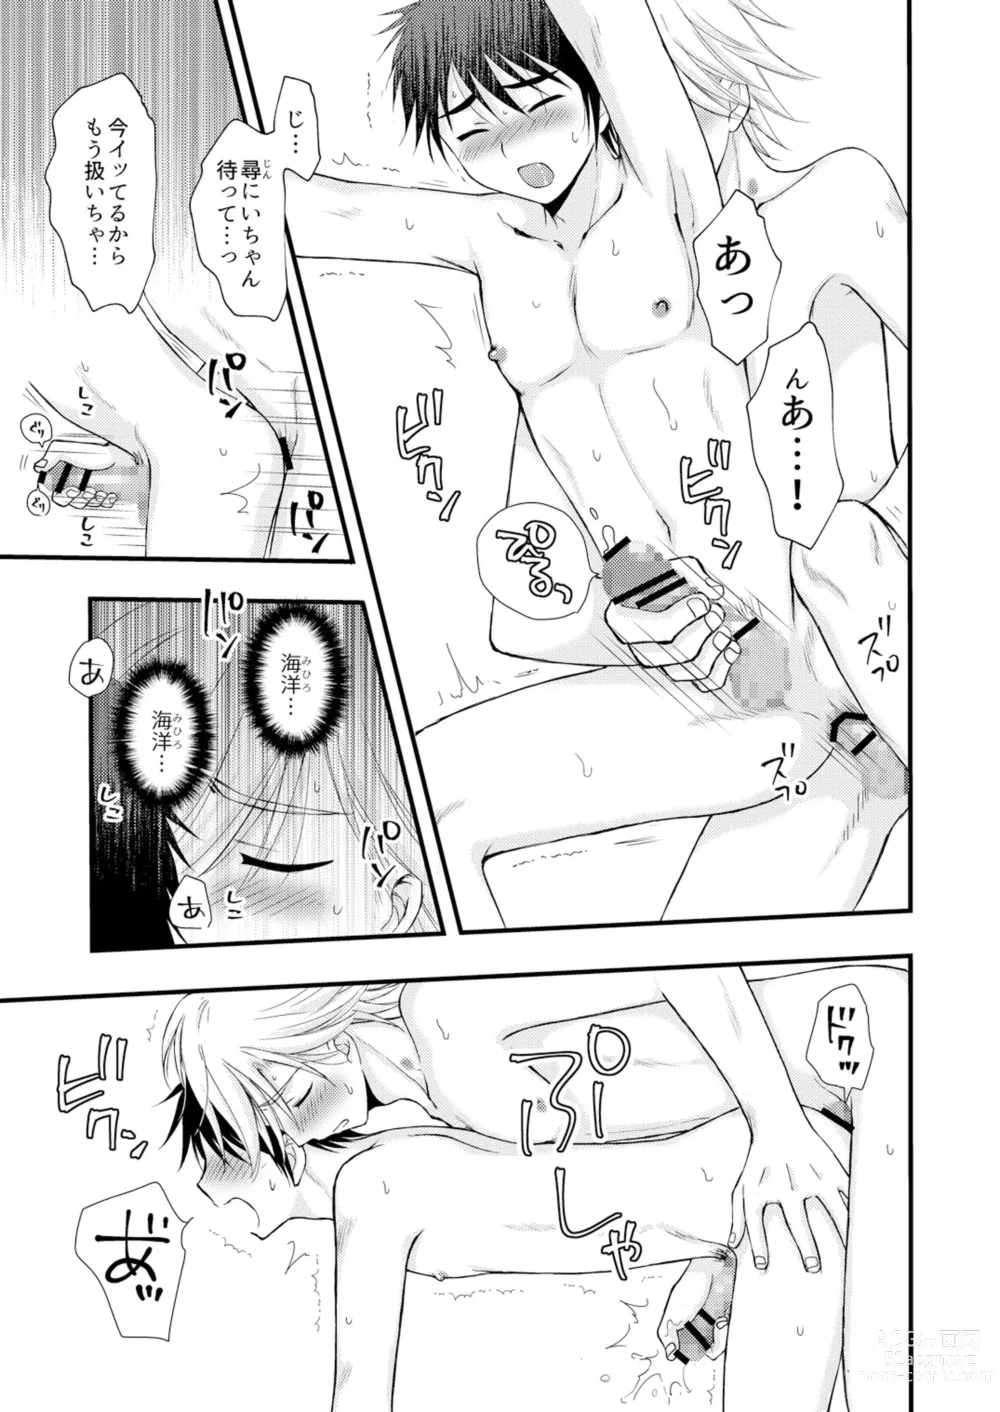 Page 56 of doujinshi Oitekita Umi Seiya Hen